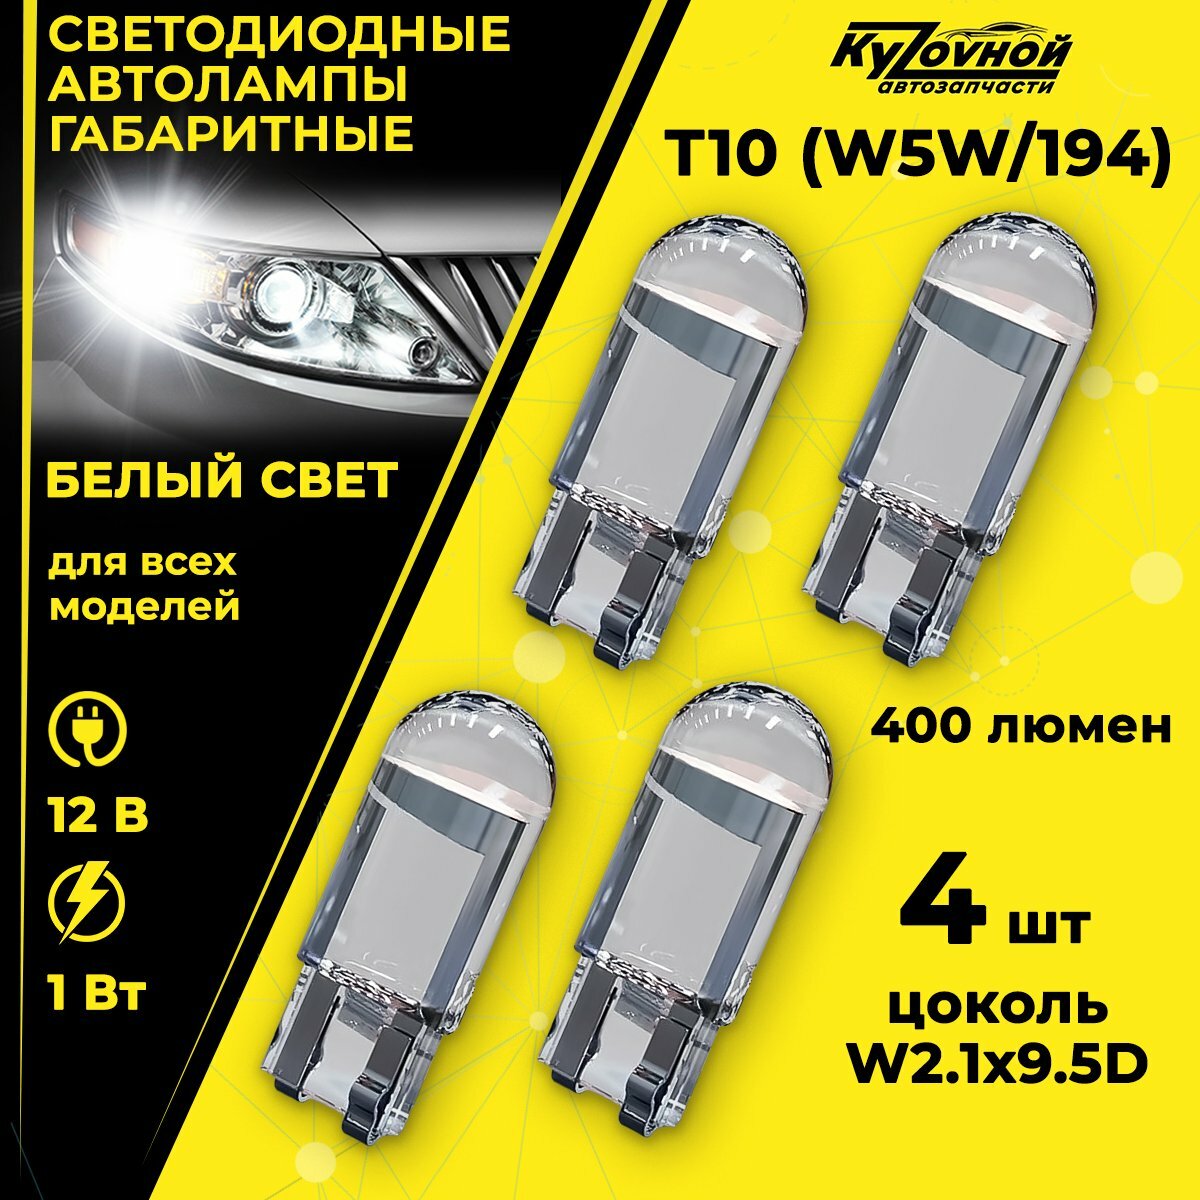 Лампа автомобильная светодиодная габаритная Т10 W5W/194 4 шт в комплекте цвет белый